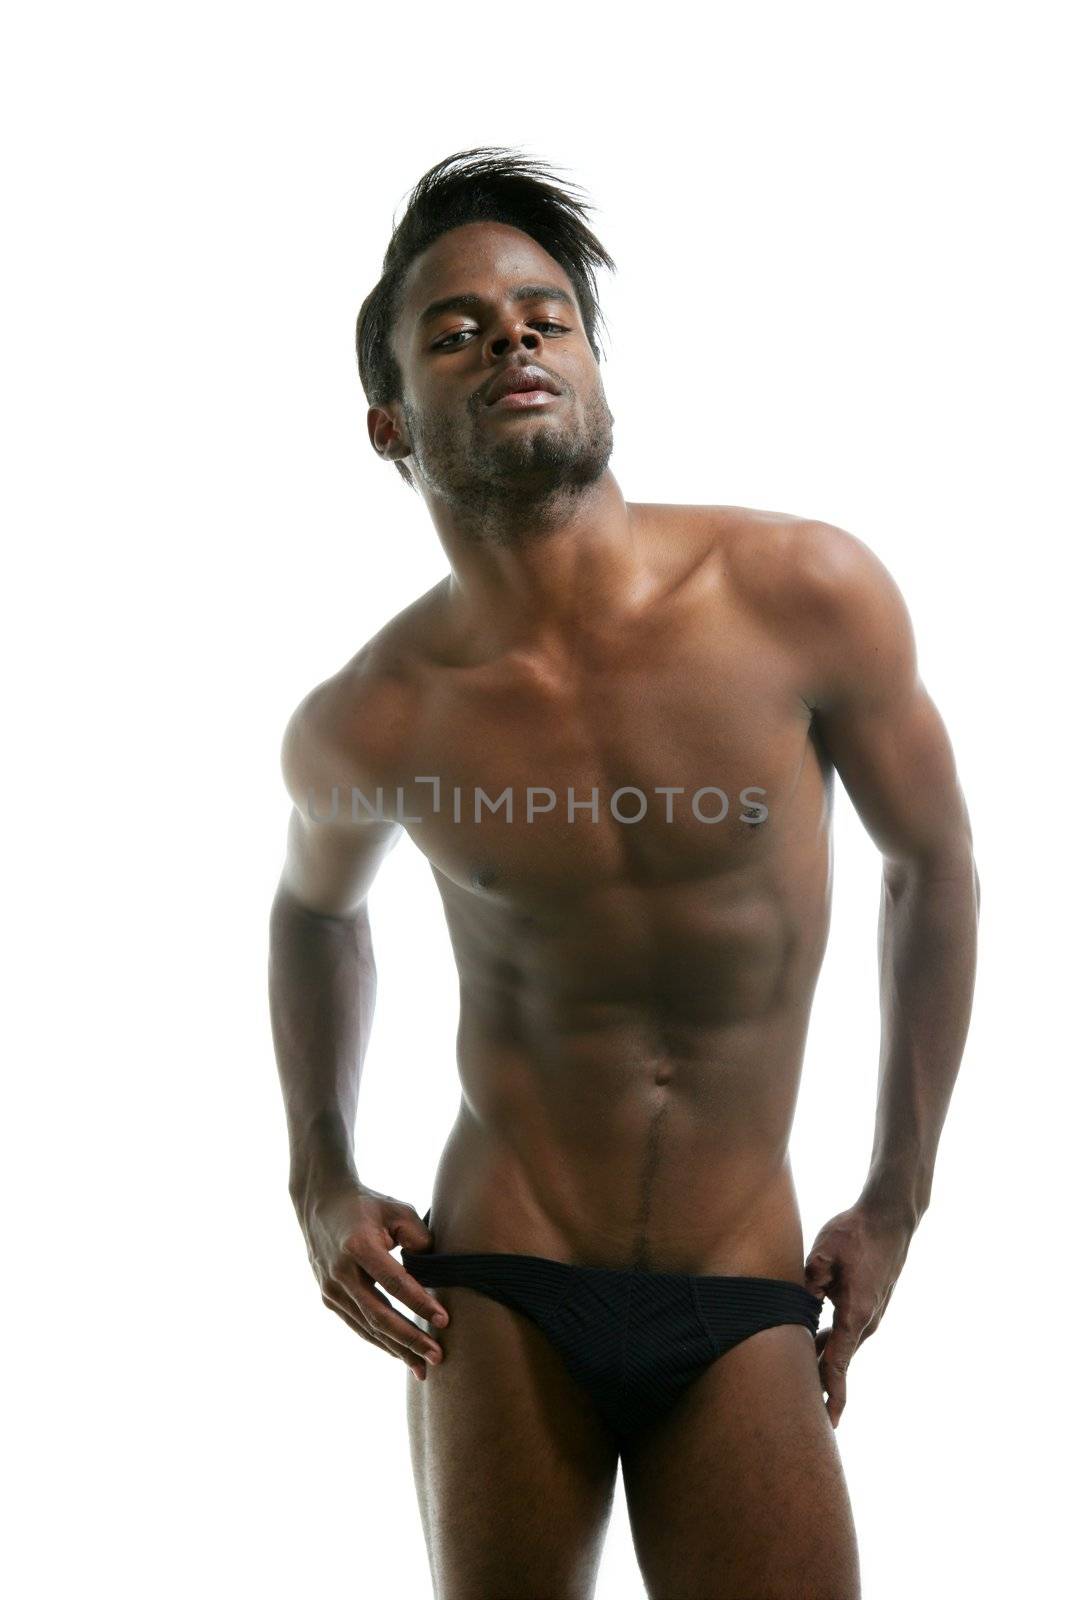 African american male model underwear by lunamarina